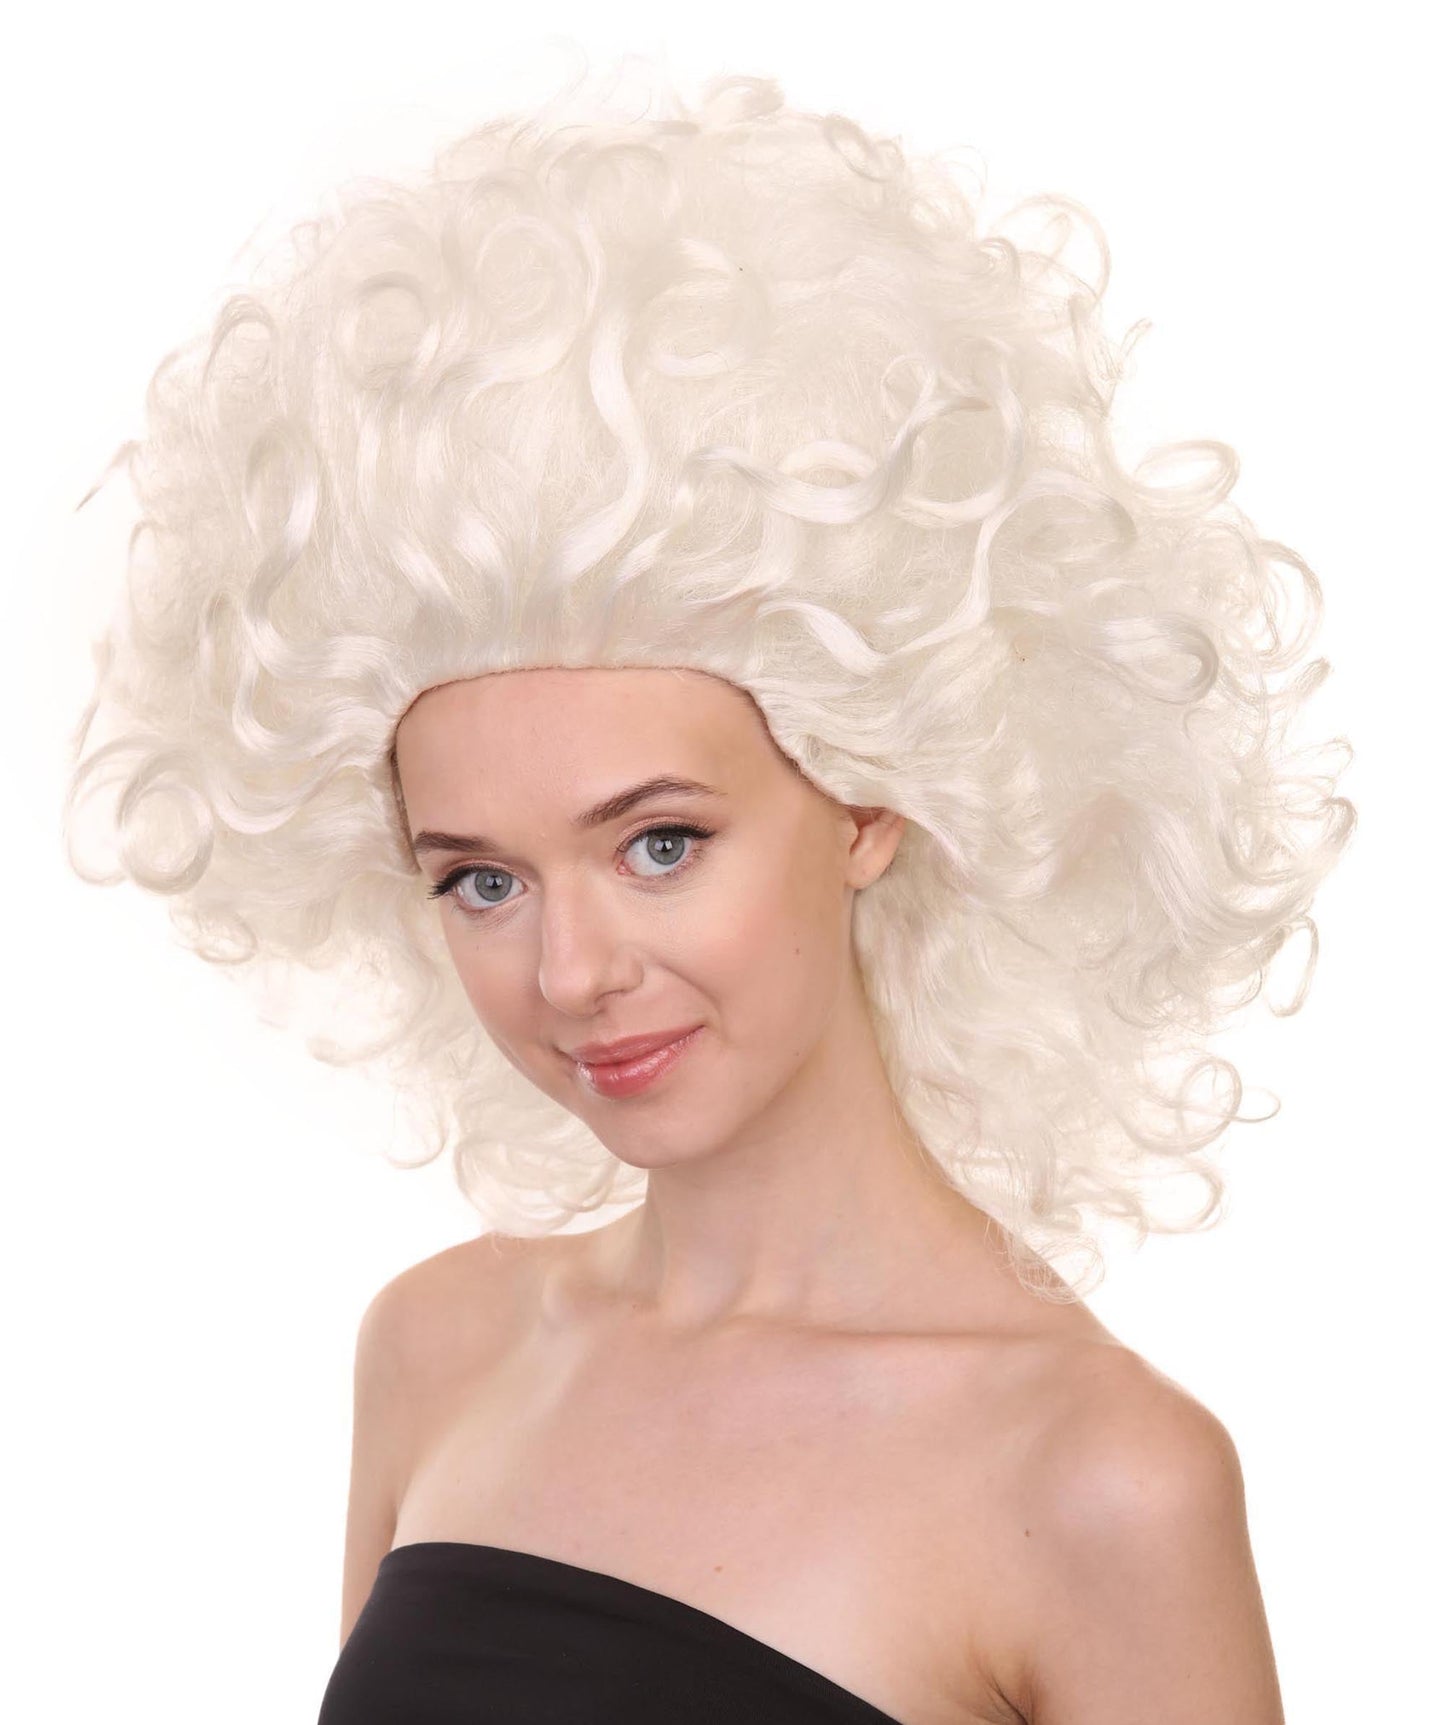 Drag Queen Costume Wig